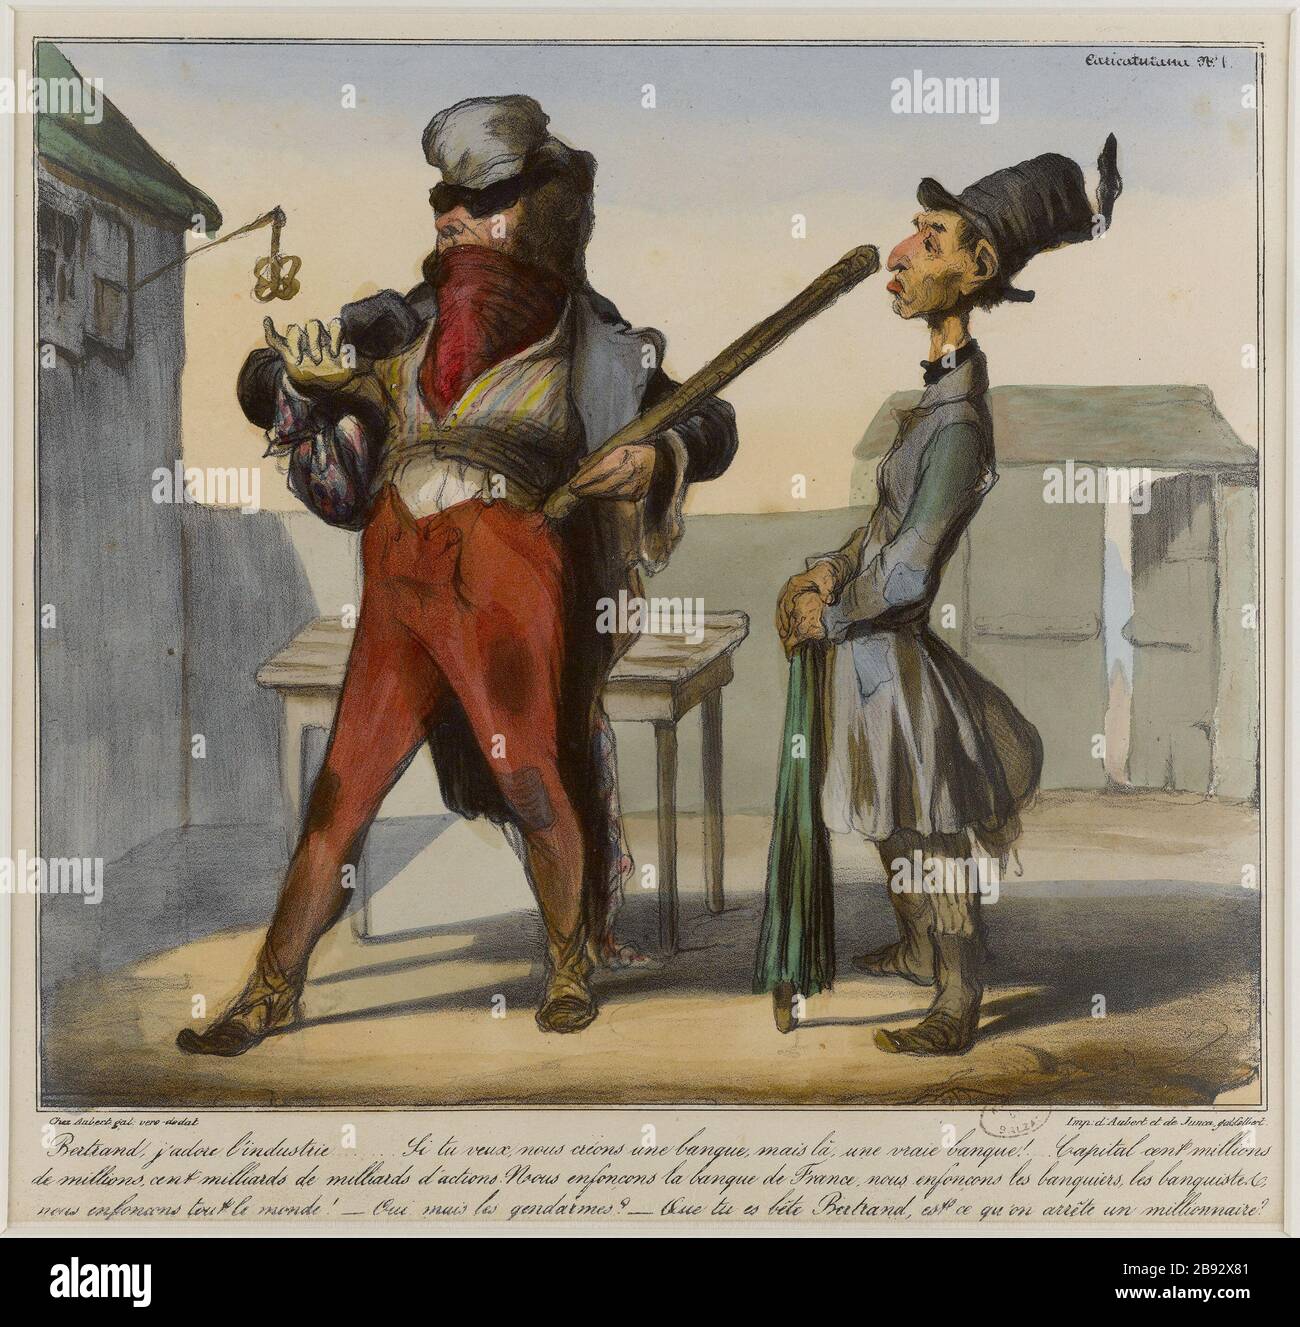 BERTRAND, AMO L'INDUSTRIA .. Honoré Daumier (1808-1879). "Bertrand, j'adore l'industrie...". Lithographie coloriée et gommée. 1836-1838. Parigi, Maison de Balzac. Foto Stock